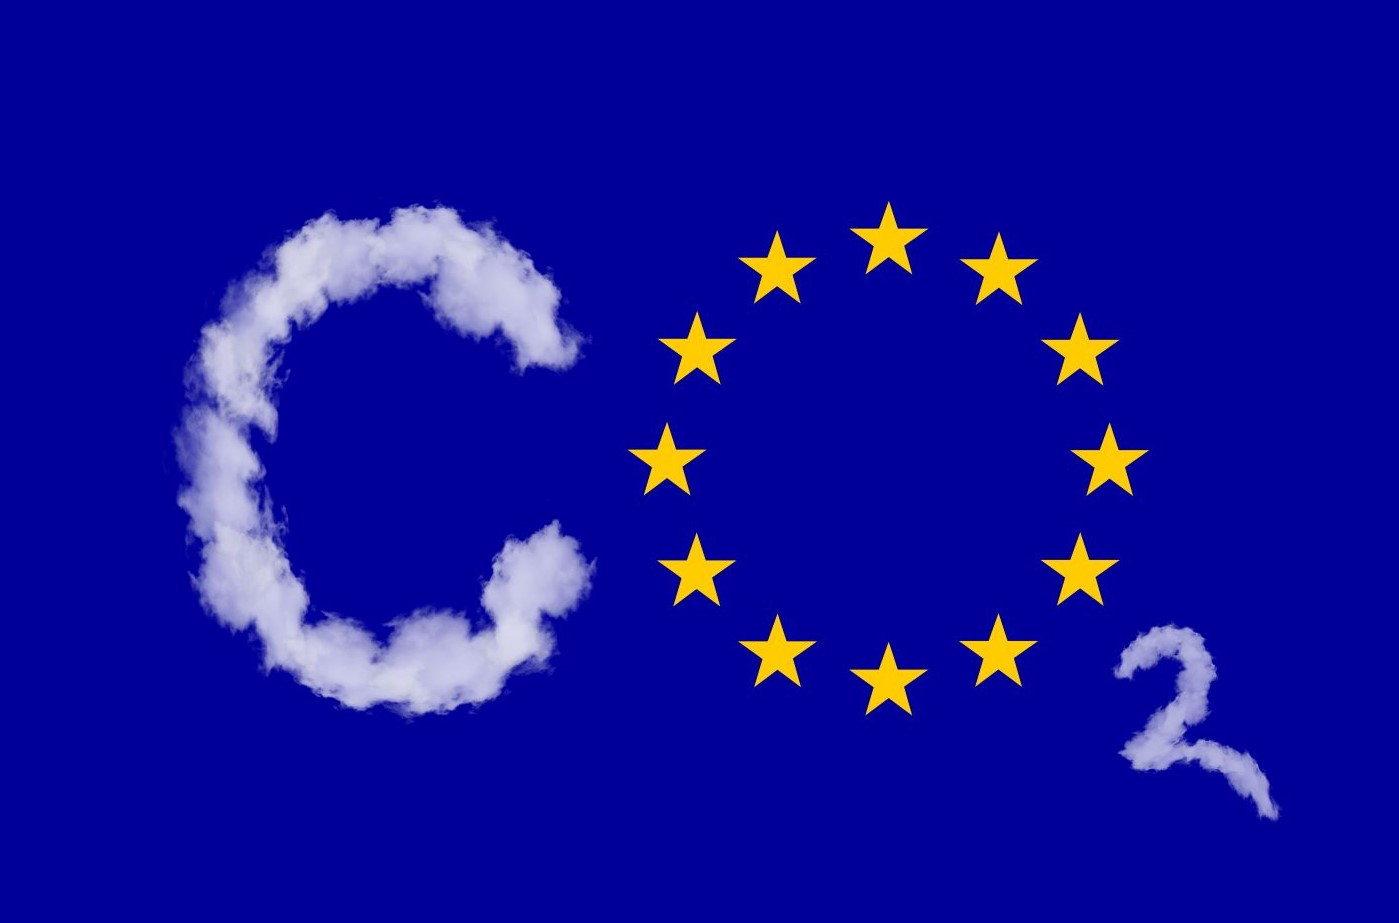 Sensacyjny raport: Tylko 2% Polaków wierzy w redukcję emisji CO2, 80% popiera OZE, 56% atom